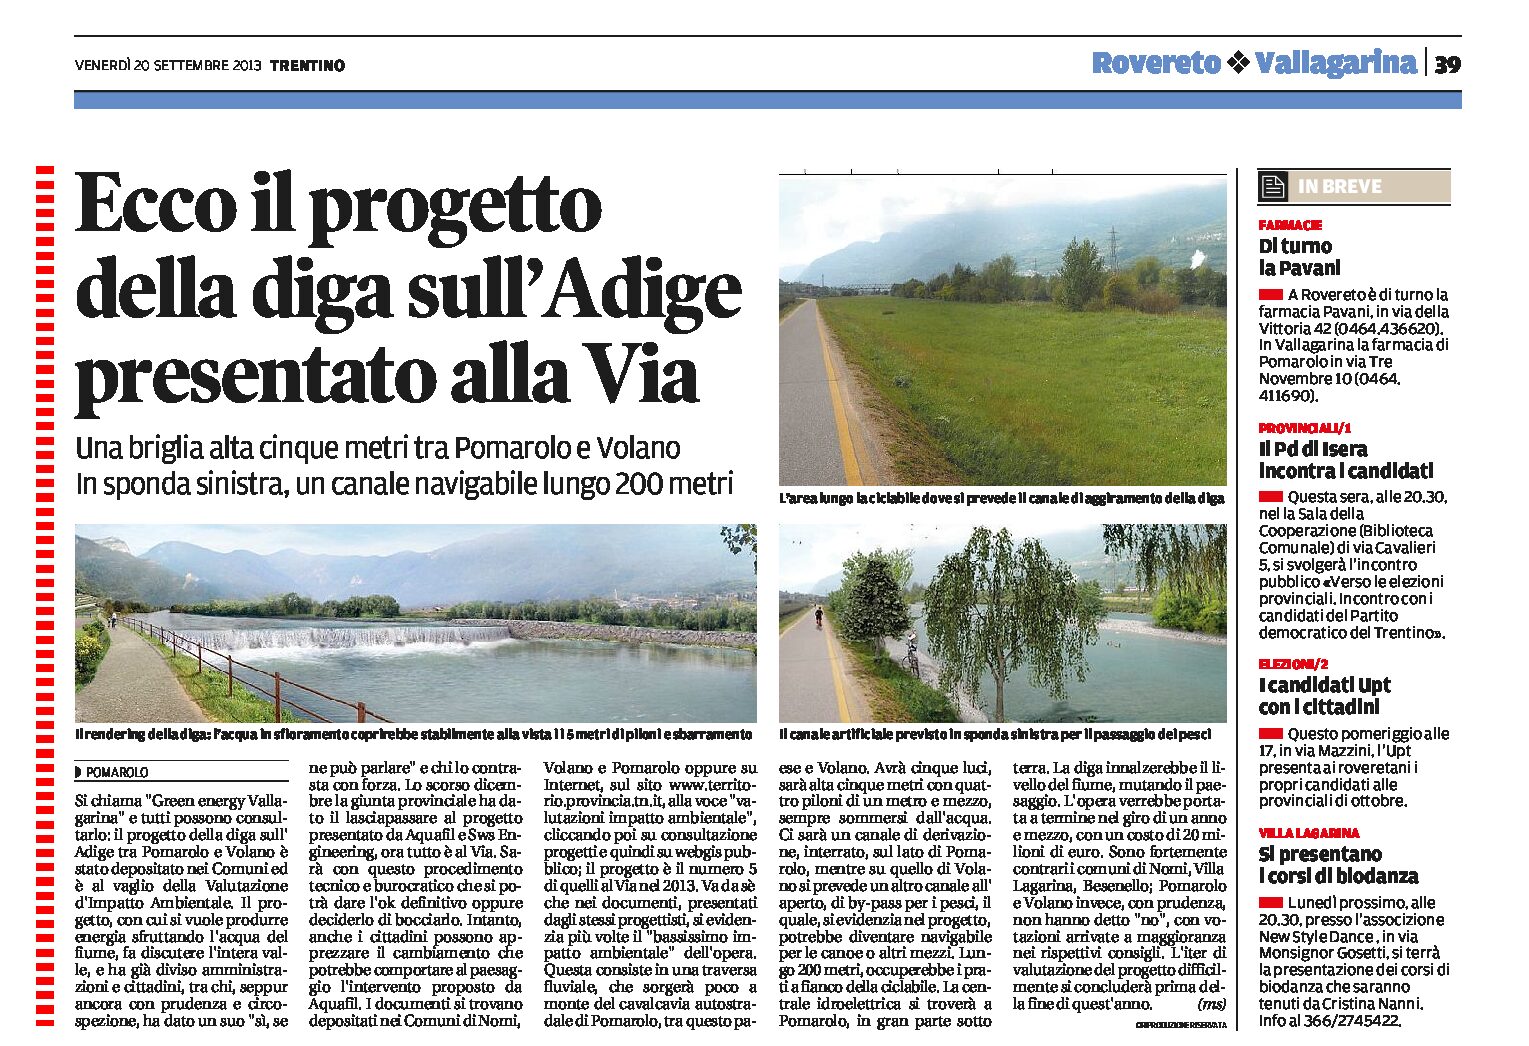 “Green energy Vallagarina”: Il progetto della diga sull’Adige tra Pomarolo e Volano